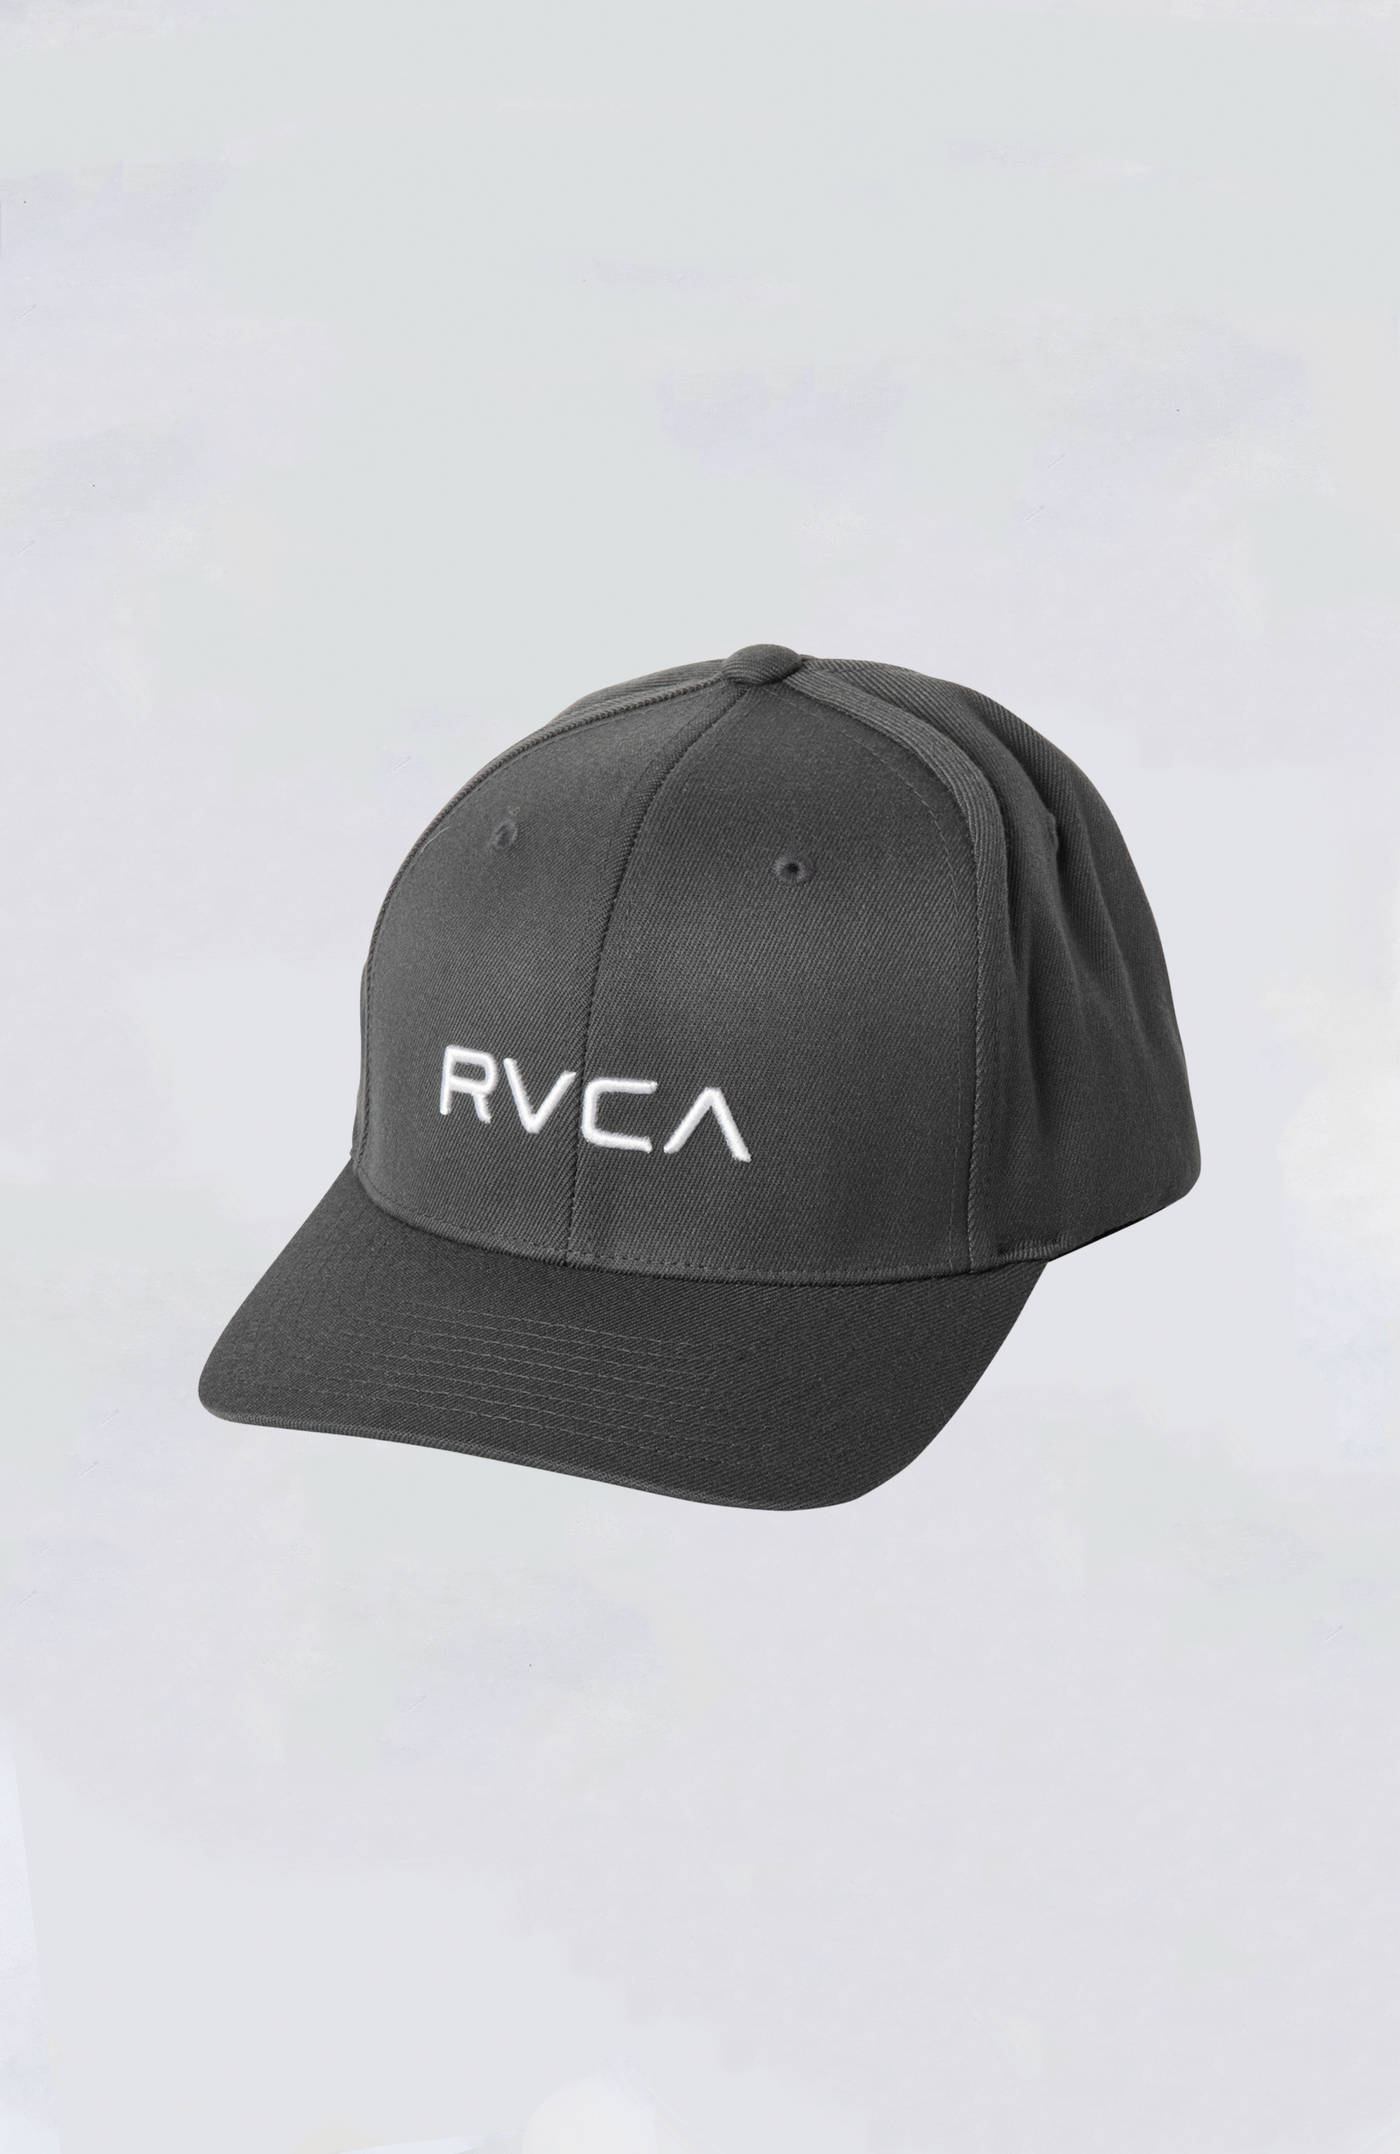 RVCA Hat - RVCA Flex Fit